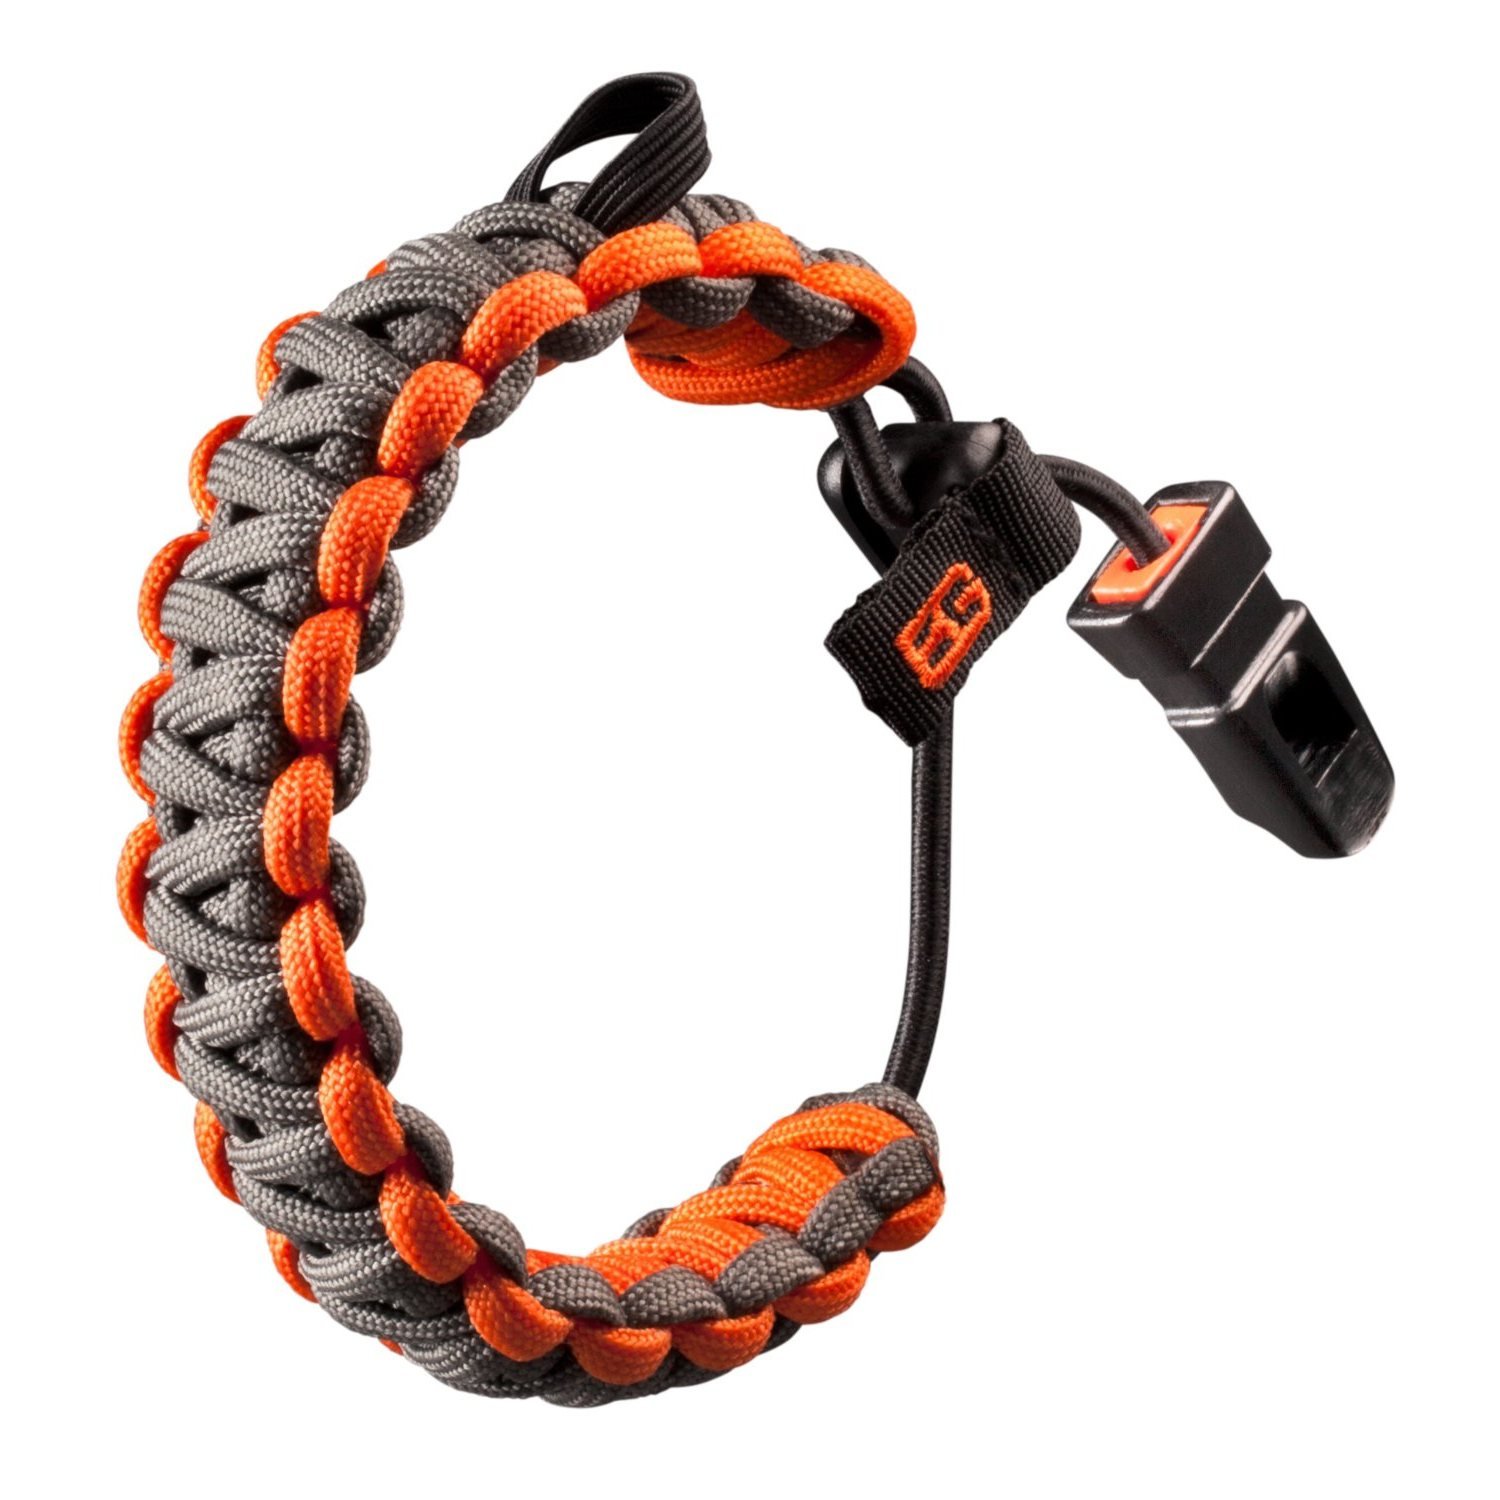 Køb Genuine Gerber 31001773 Bear Grylls Paracord Survival Bracelet